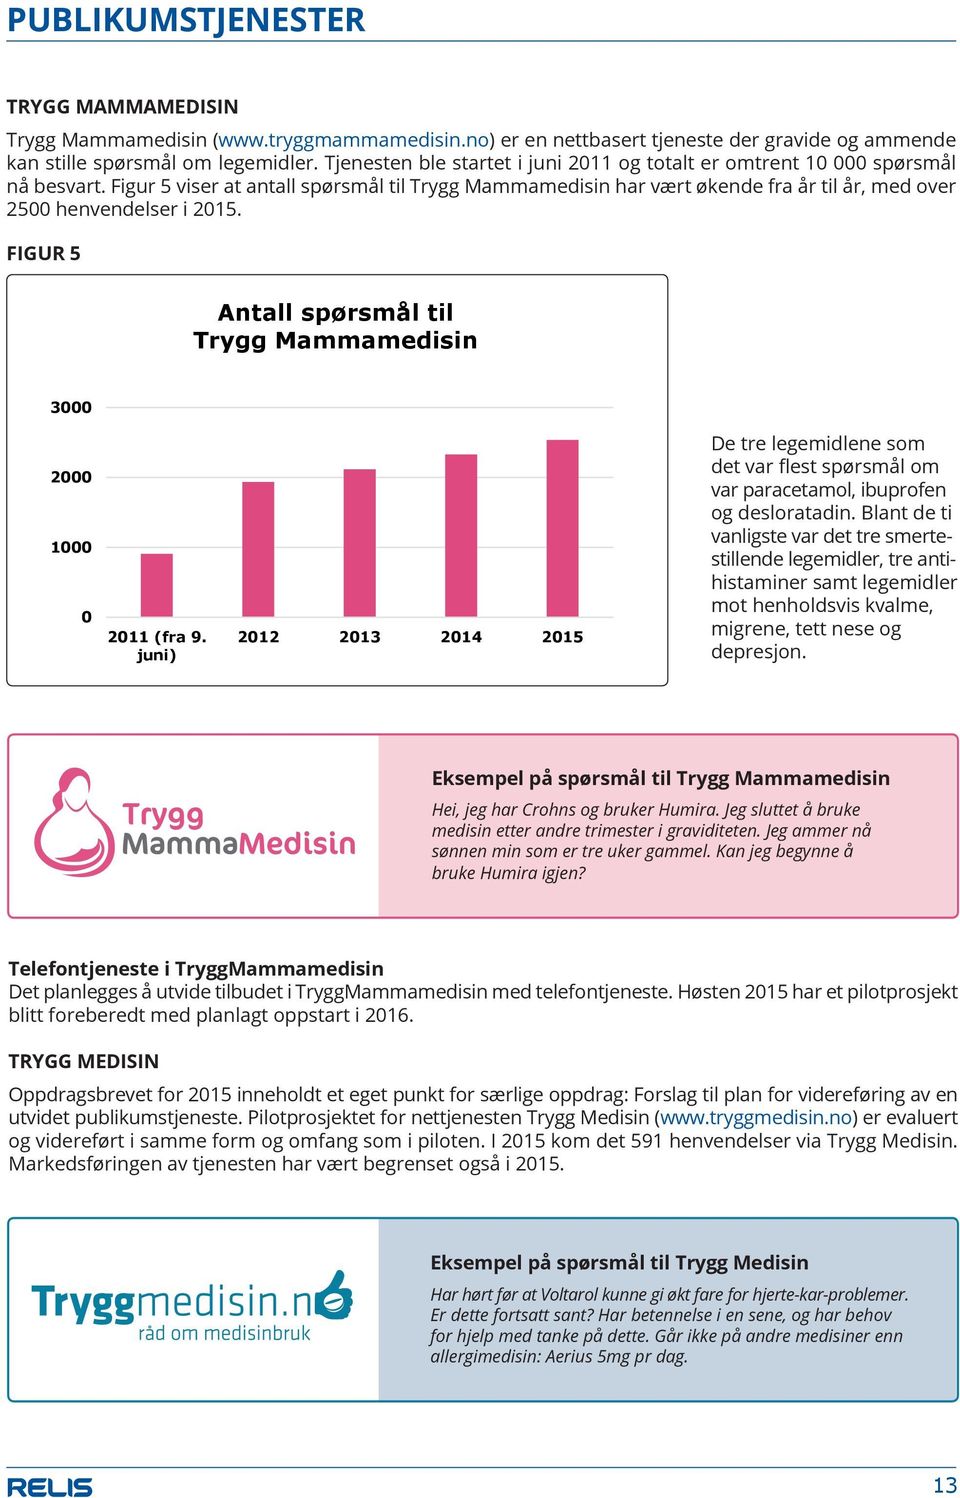 Figur 5 viser at antall spørsmål til Trygg Mammamedisin har vært økende fra år til år, med over Figur 25005 henvendelser i 2015.